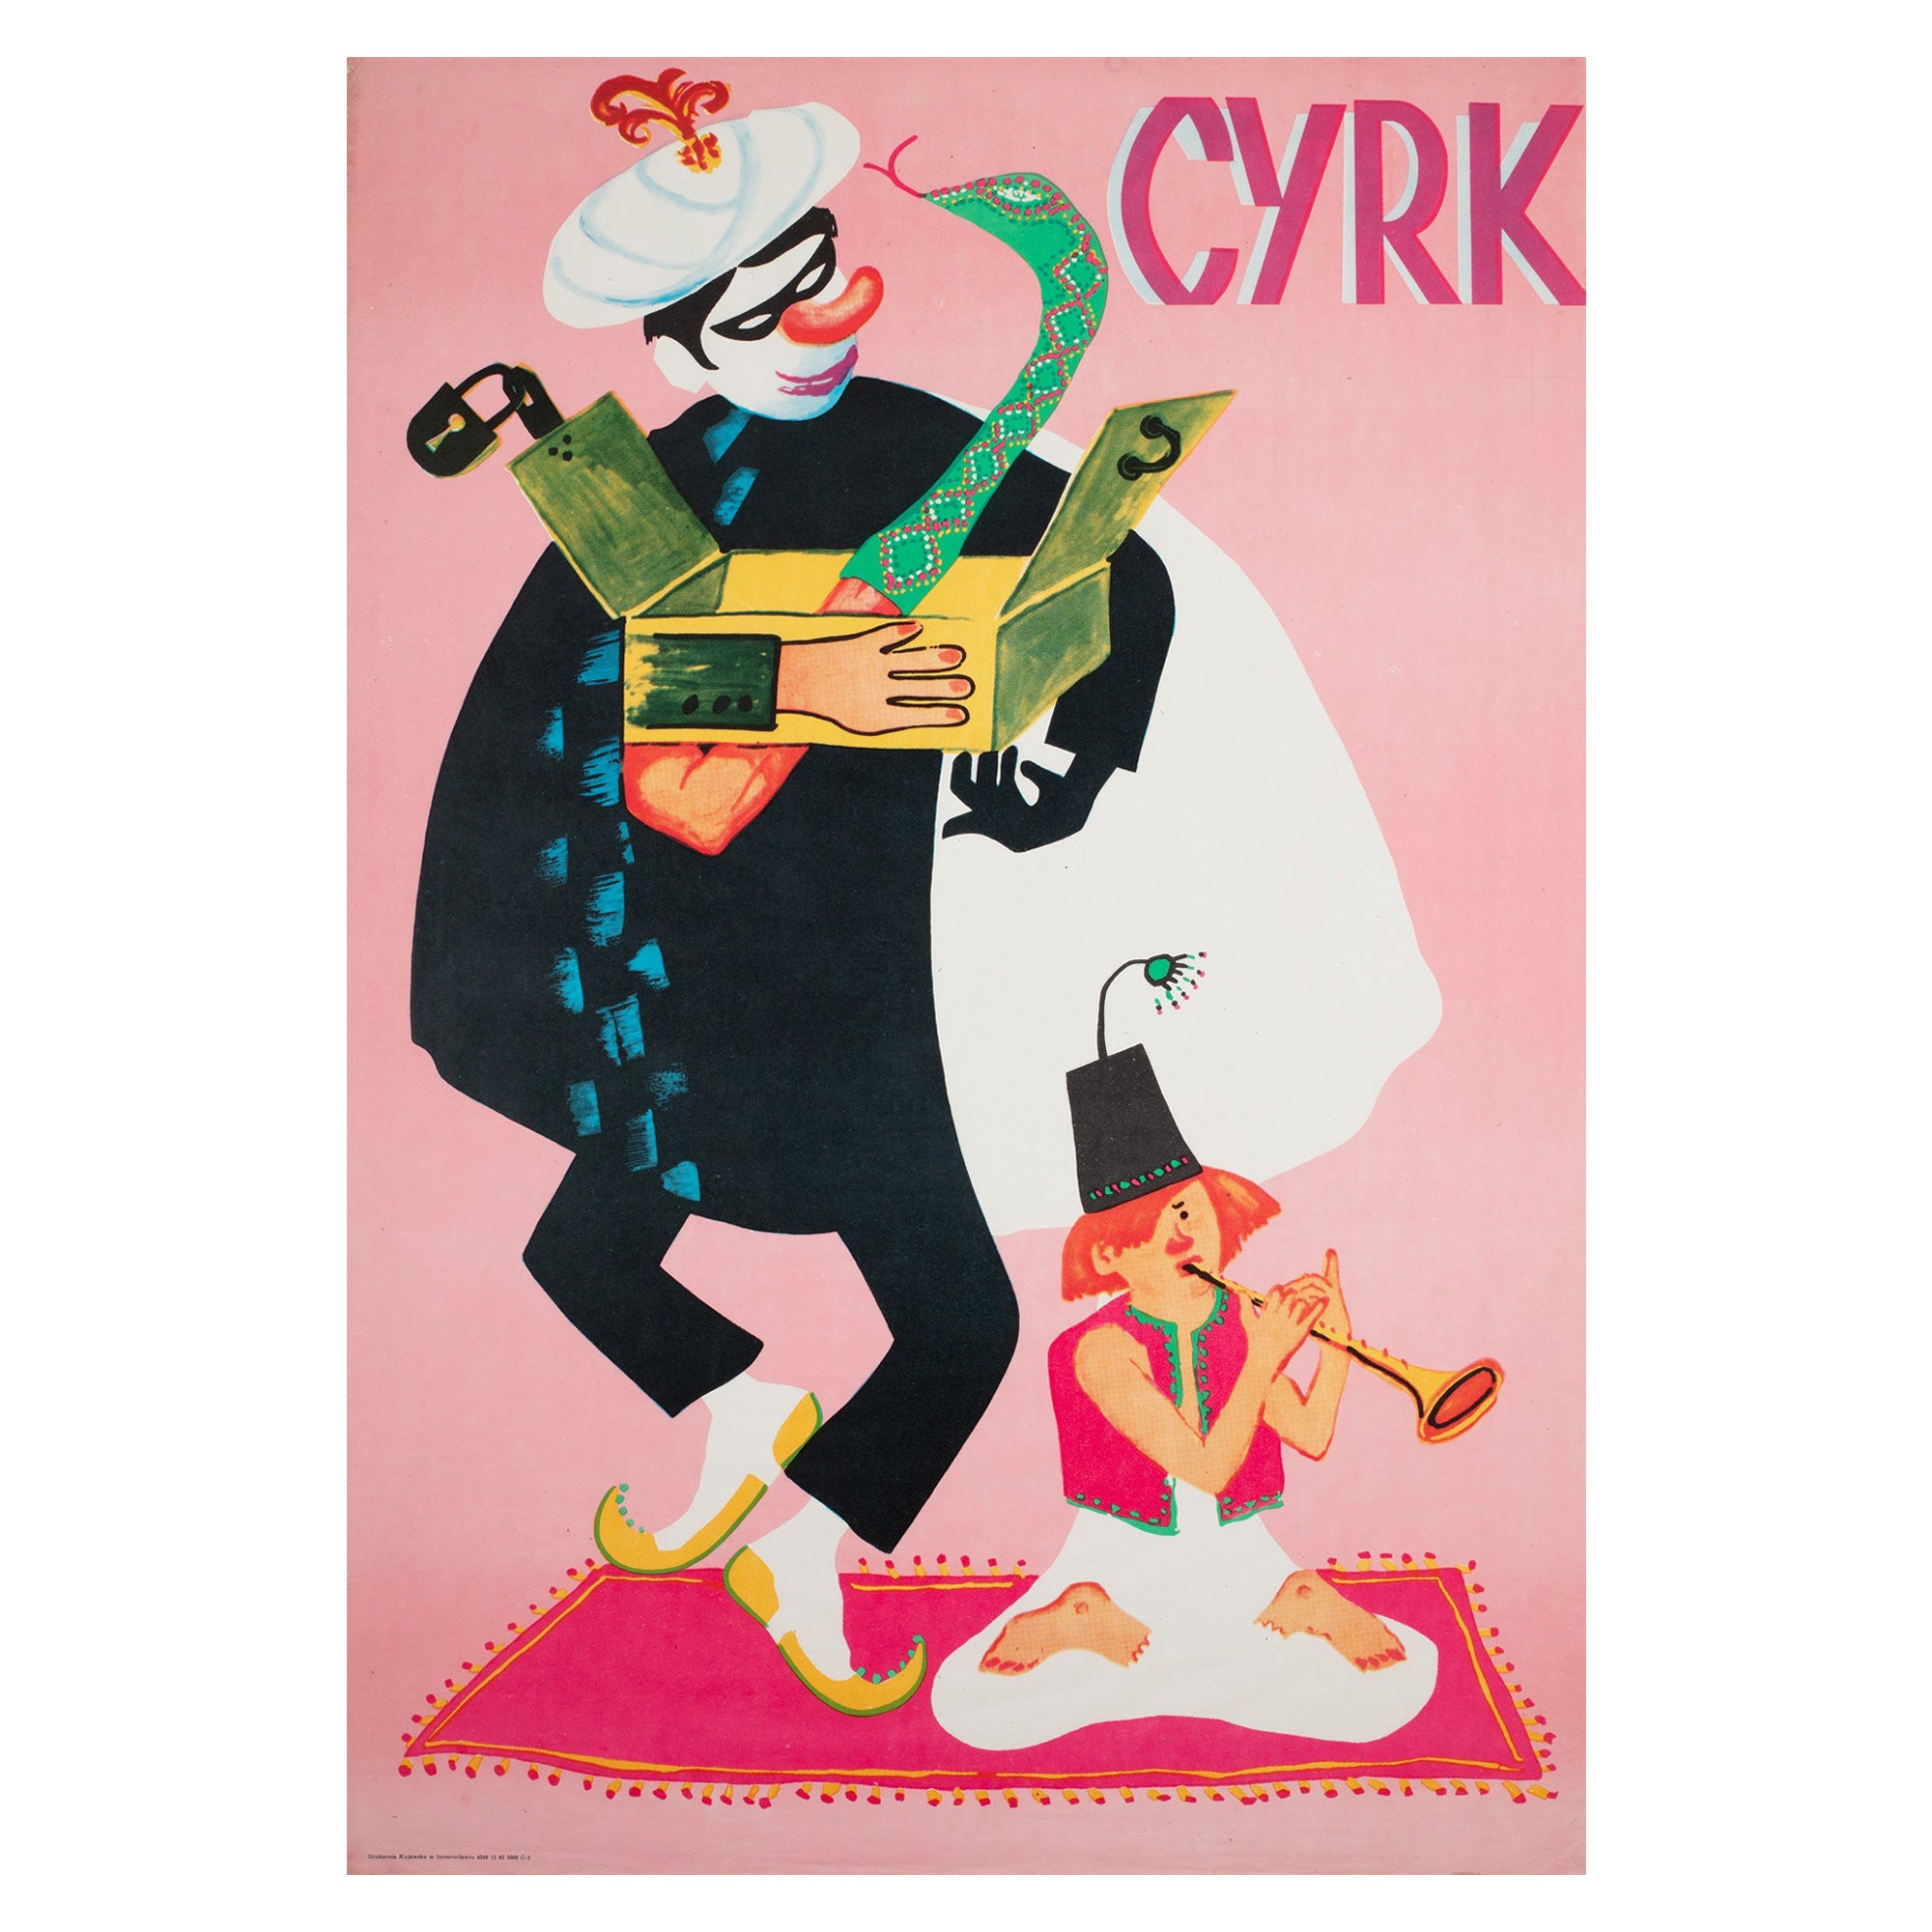 CYRK Magician Snake Charmer 1973 Polish Circus Poster, Miedza-Tomaszewski For Sale